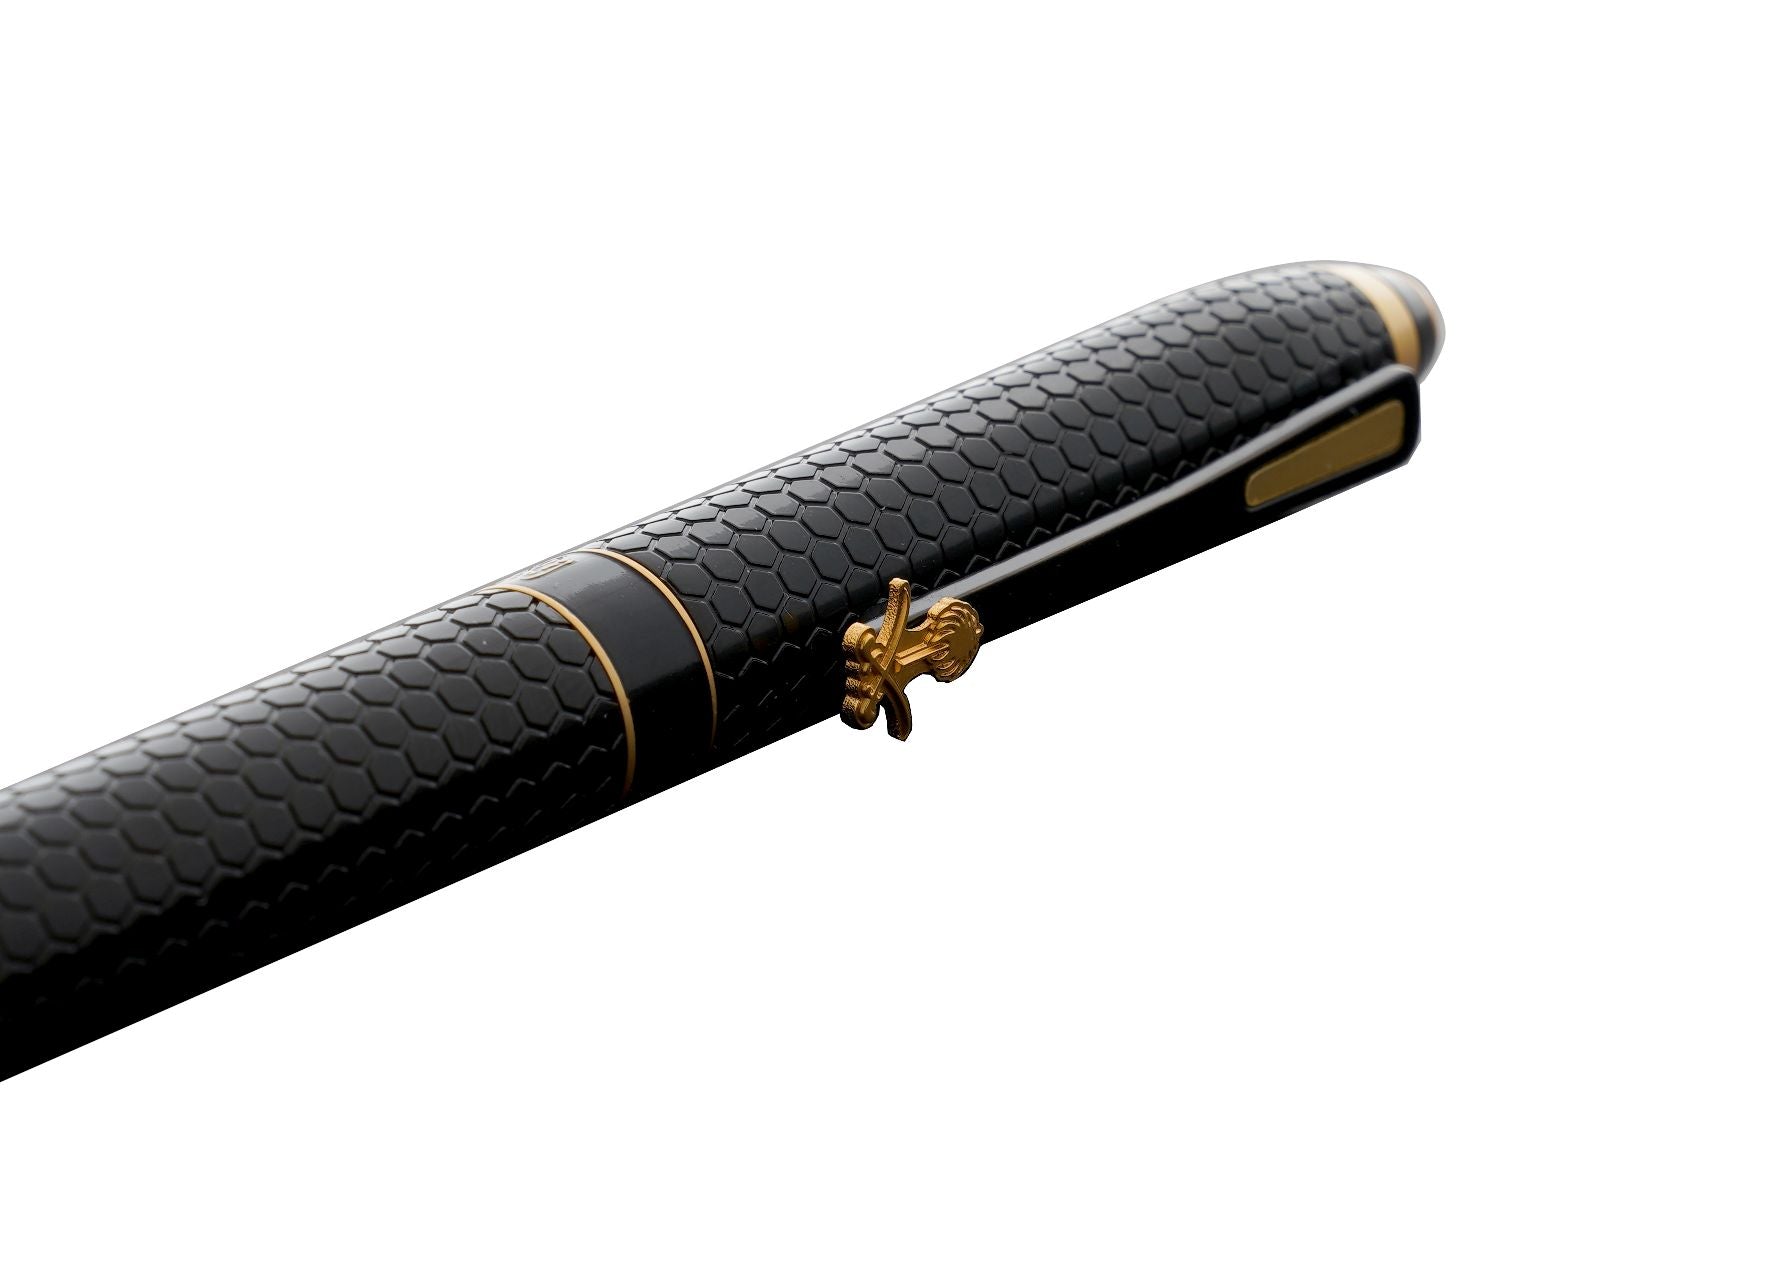 Rovatti Hexa Black KSA Pen | stationary gift items | gift ideas for men & women